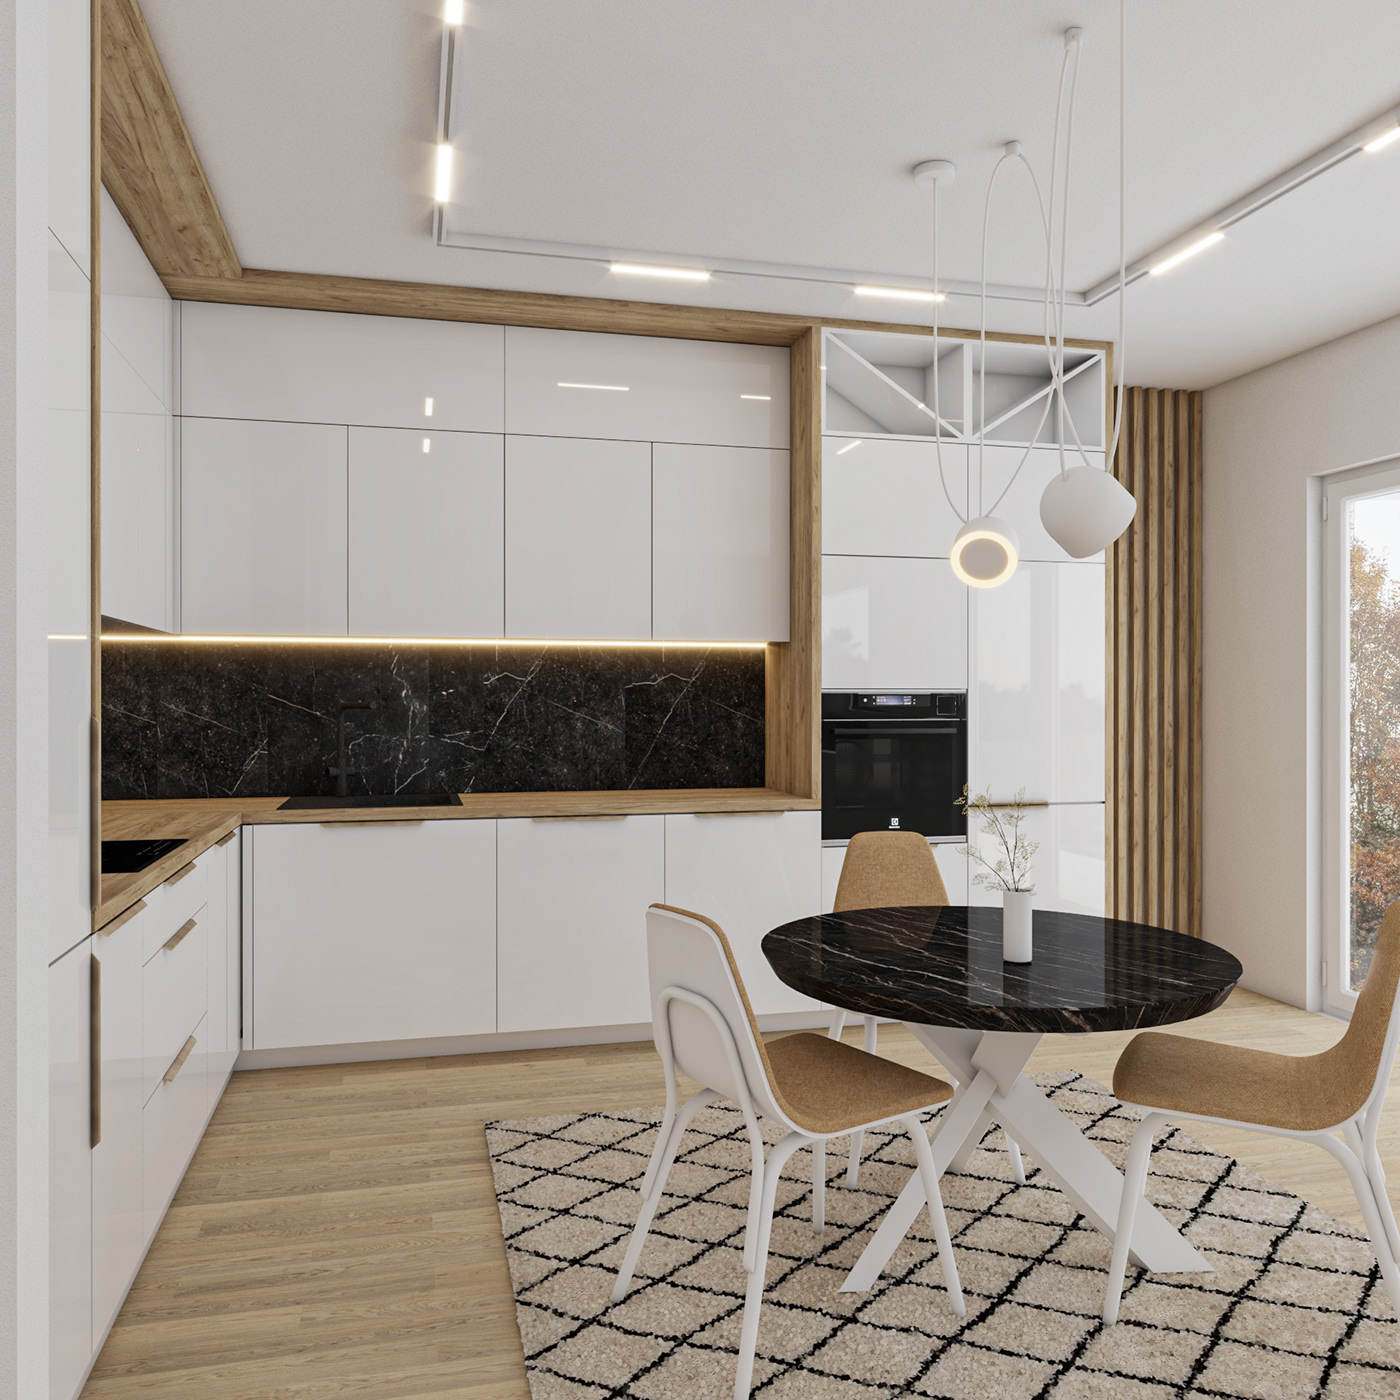 architecture interiordesign kitchen kitchendesign Render visualization vray